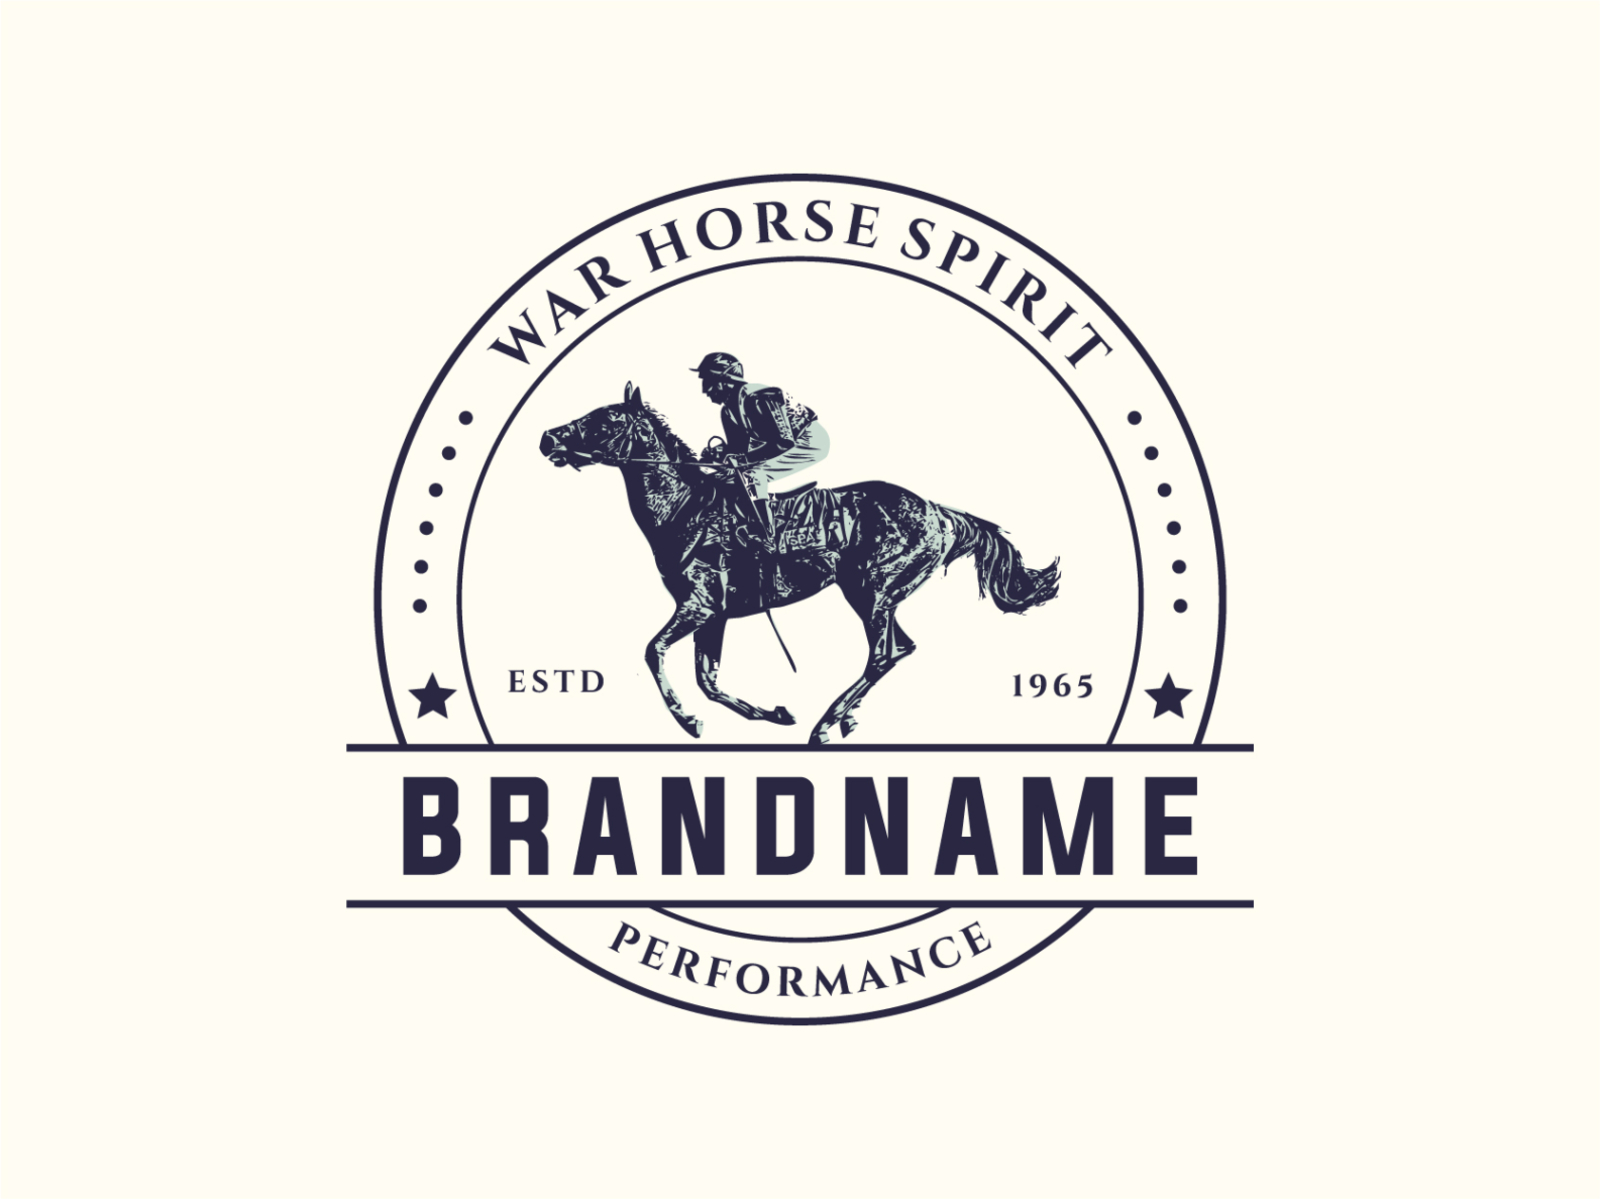 Princess horse riding logo design template Vector Image